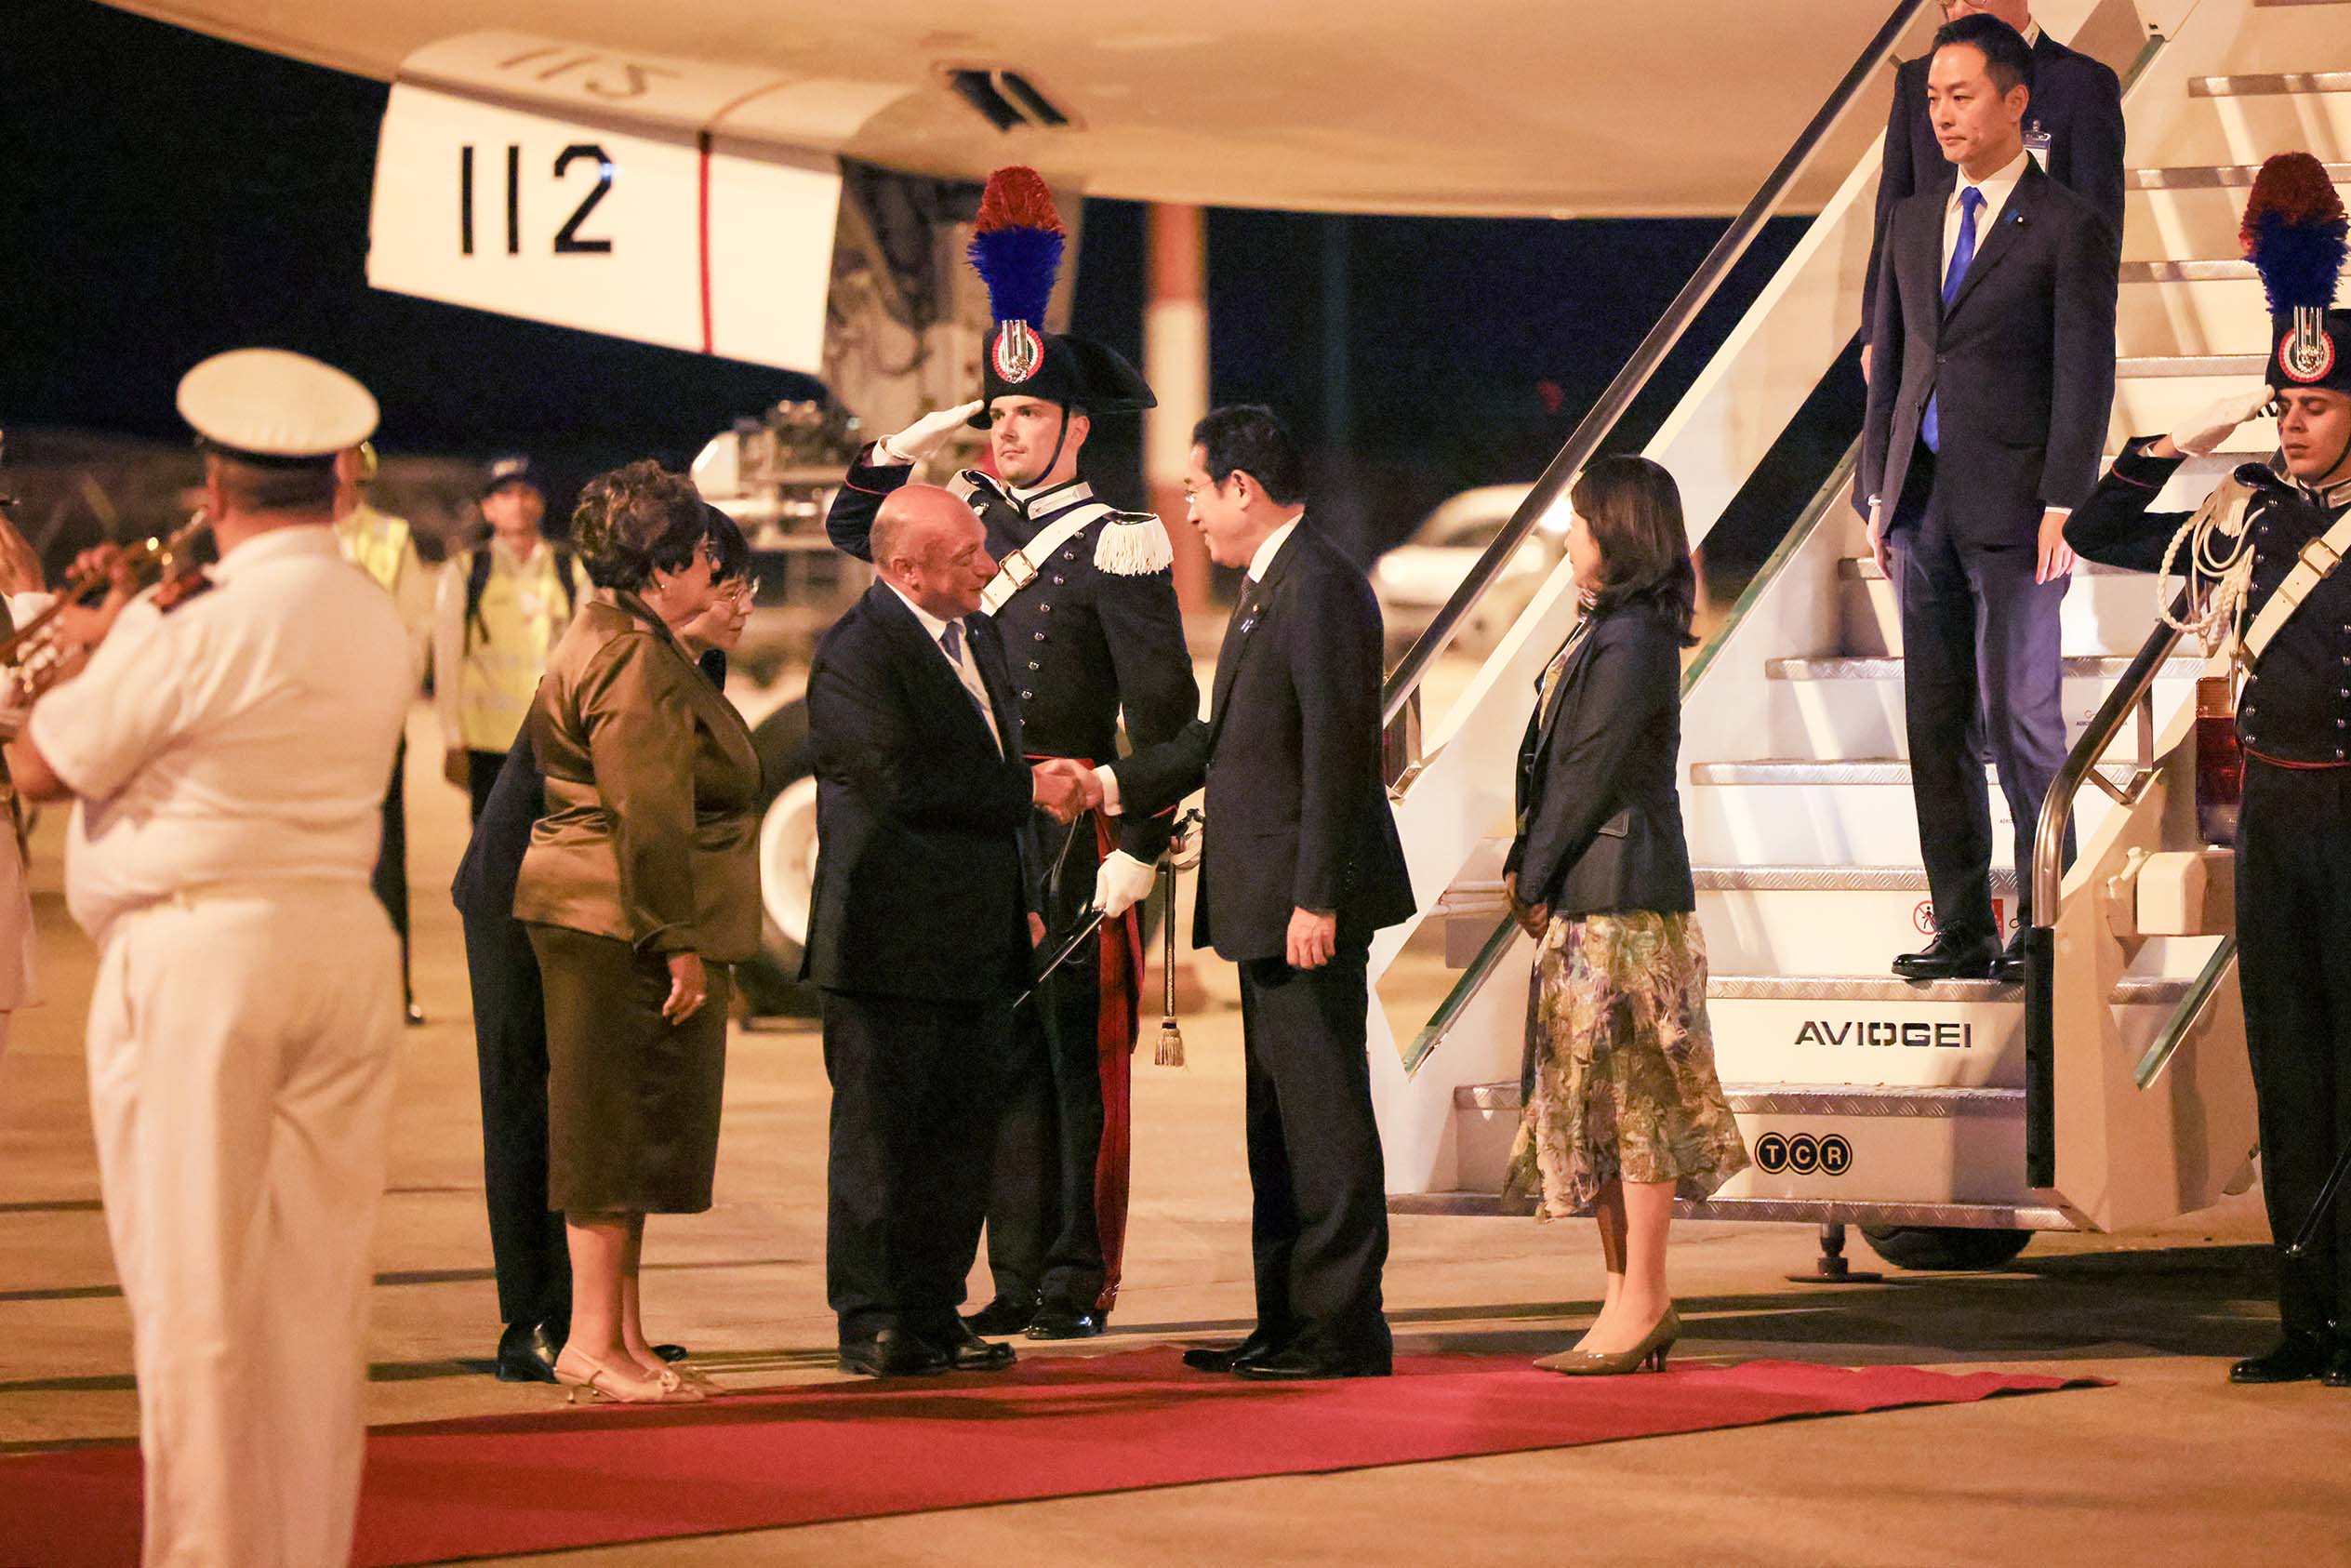 Prime Minister Kishida arriving in Italy (2)